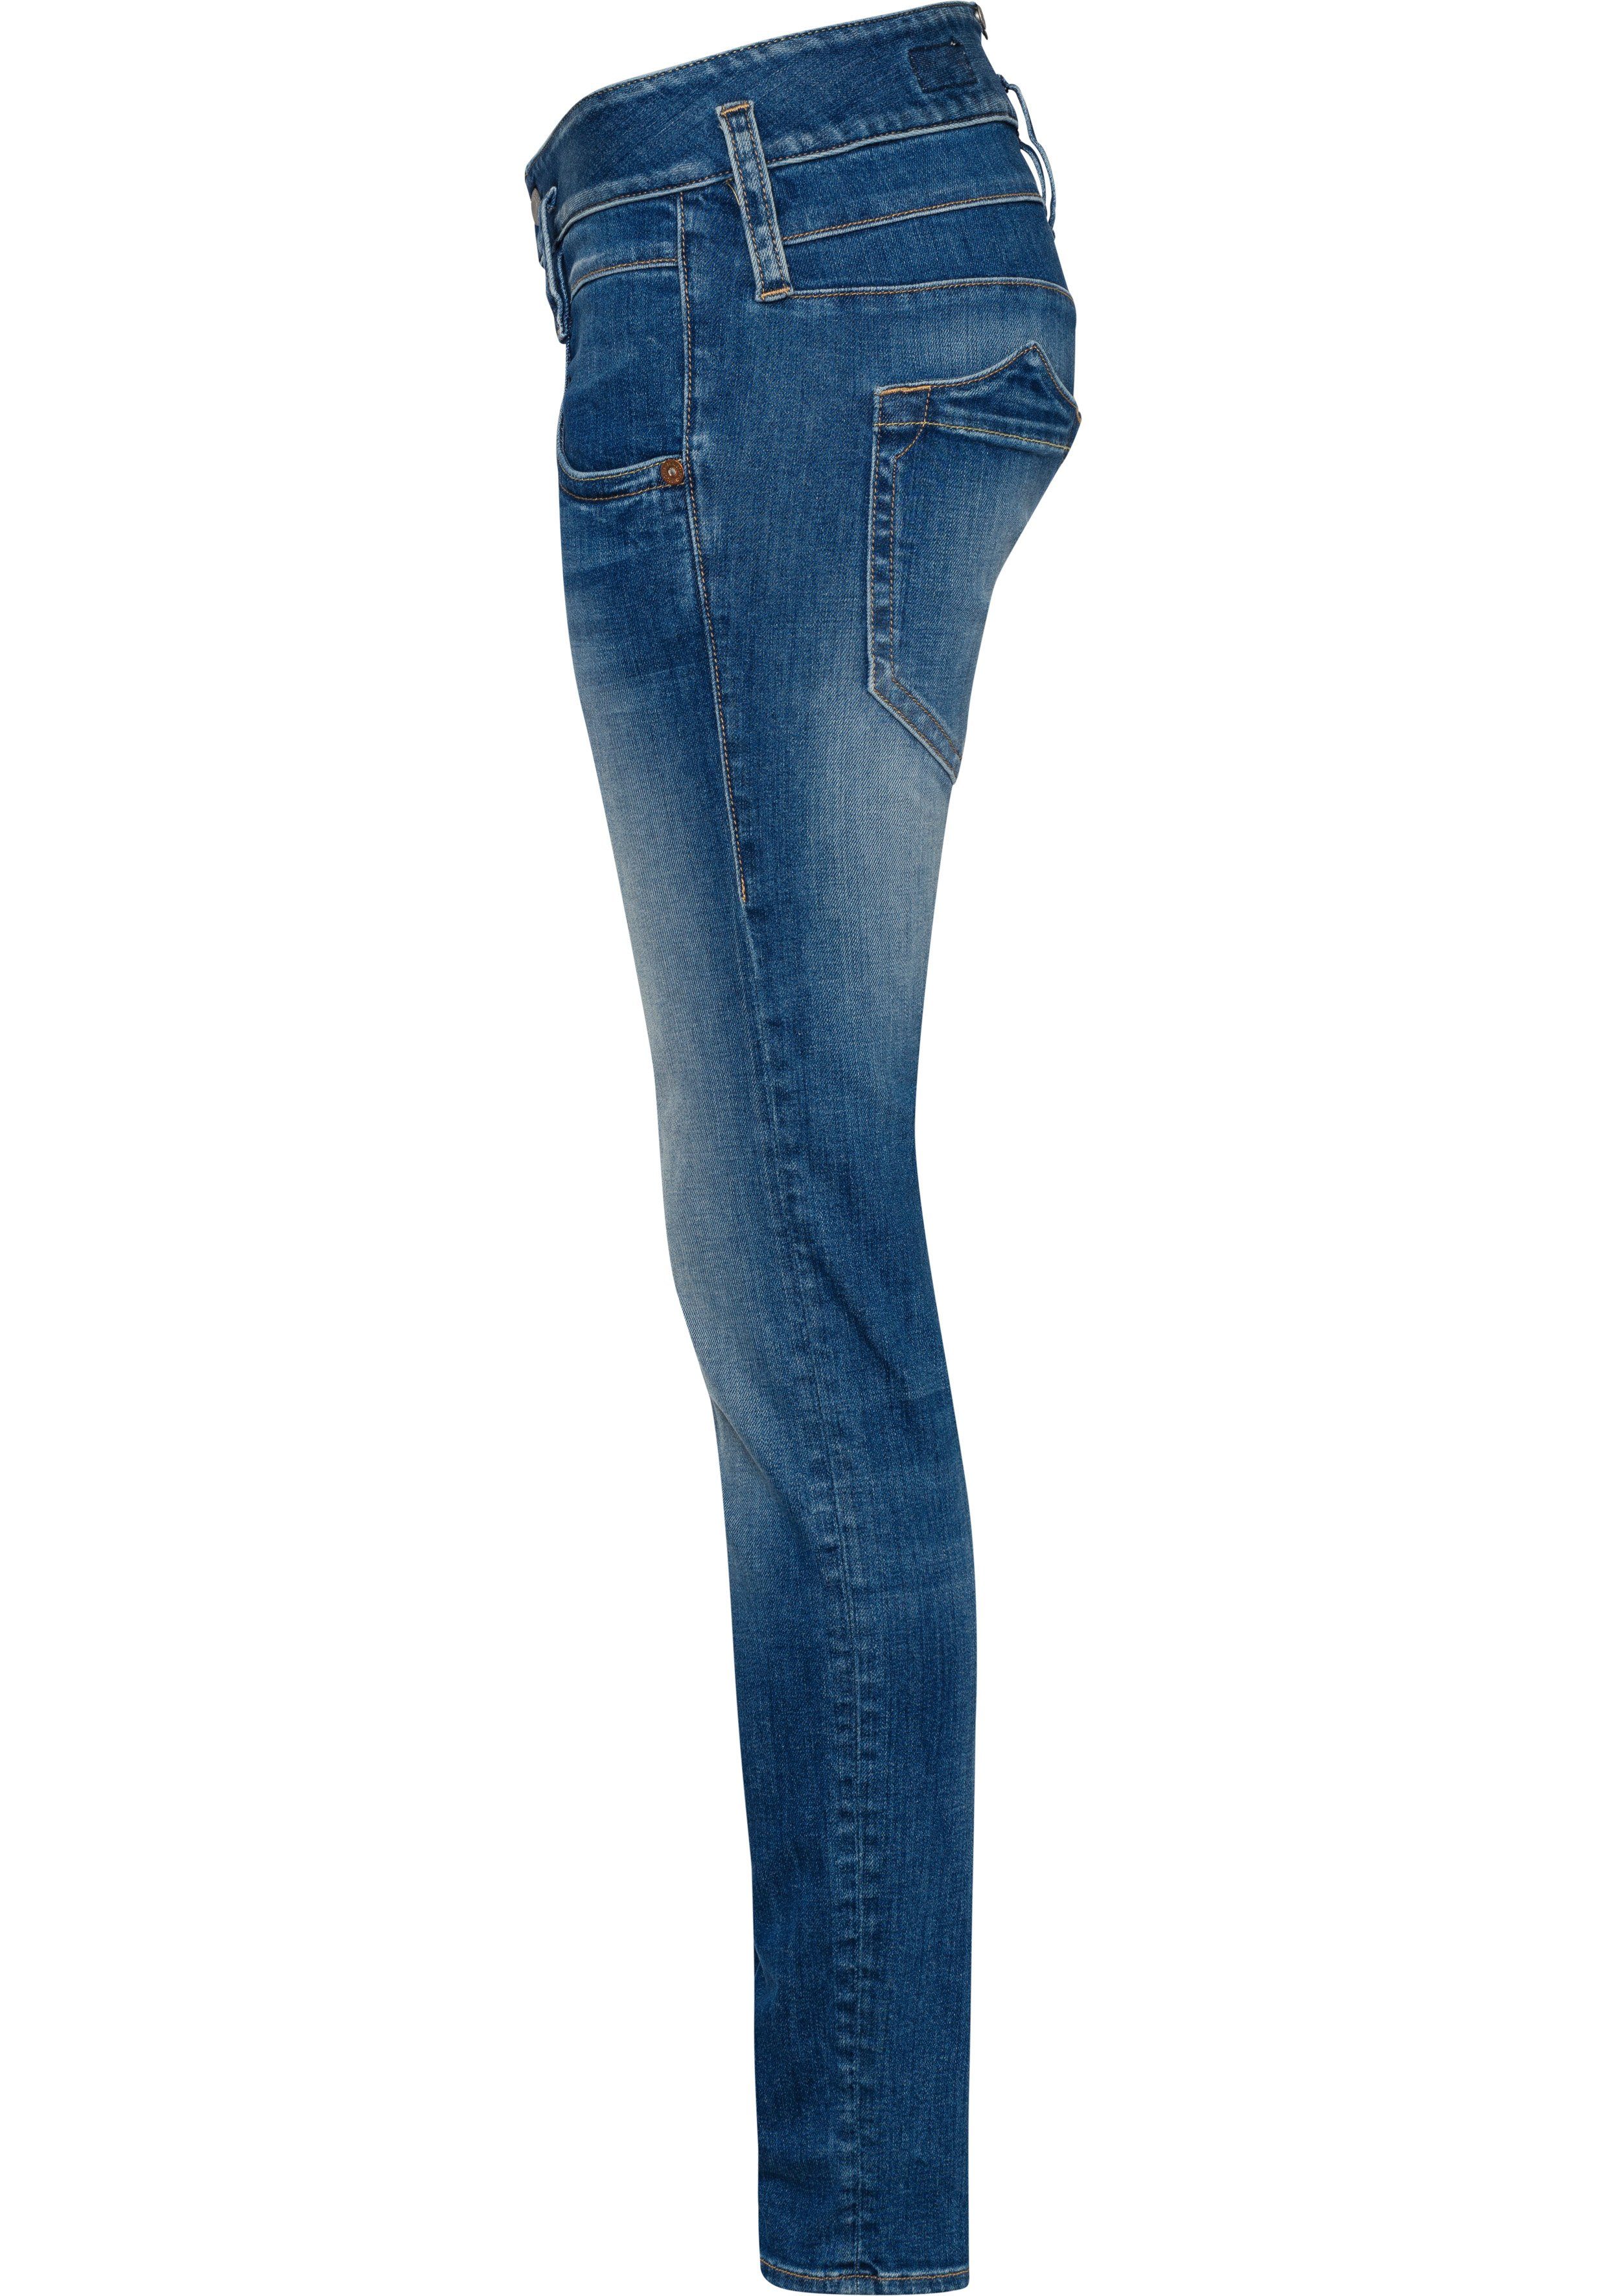 Herrlicher Slim-fit-Jeans PITCH SLIM ORGANIC sea 879 blue Vintage-Style Abriebeffekten mit